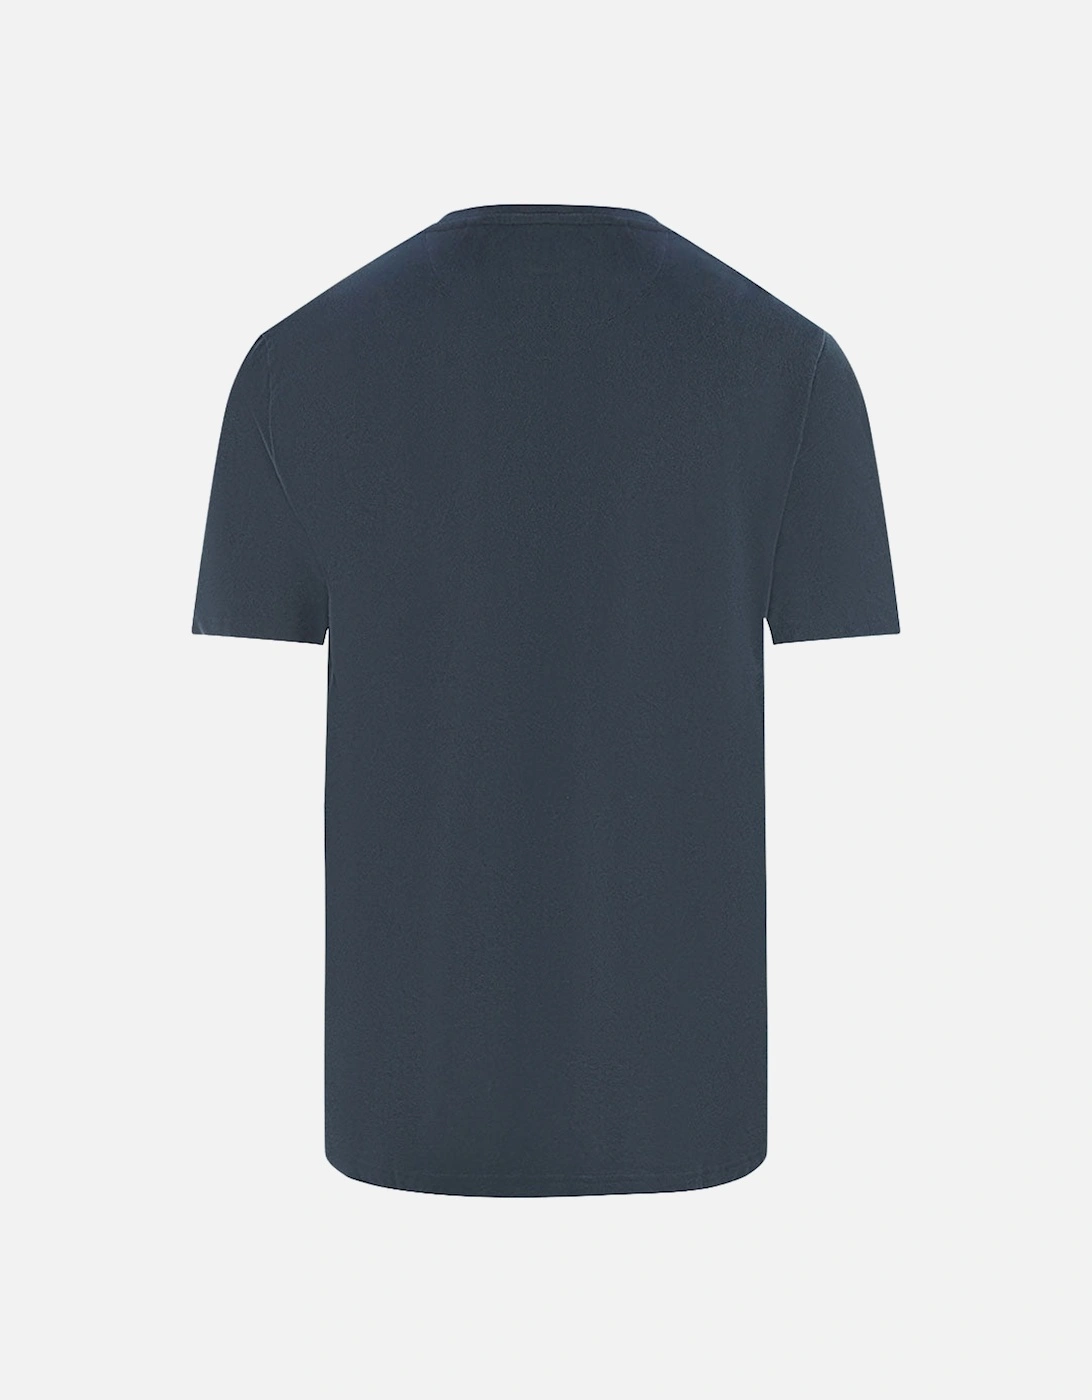 Lyle & Scott Sandwash Pique Navy Blue T-Shirt